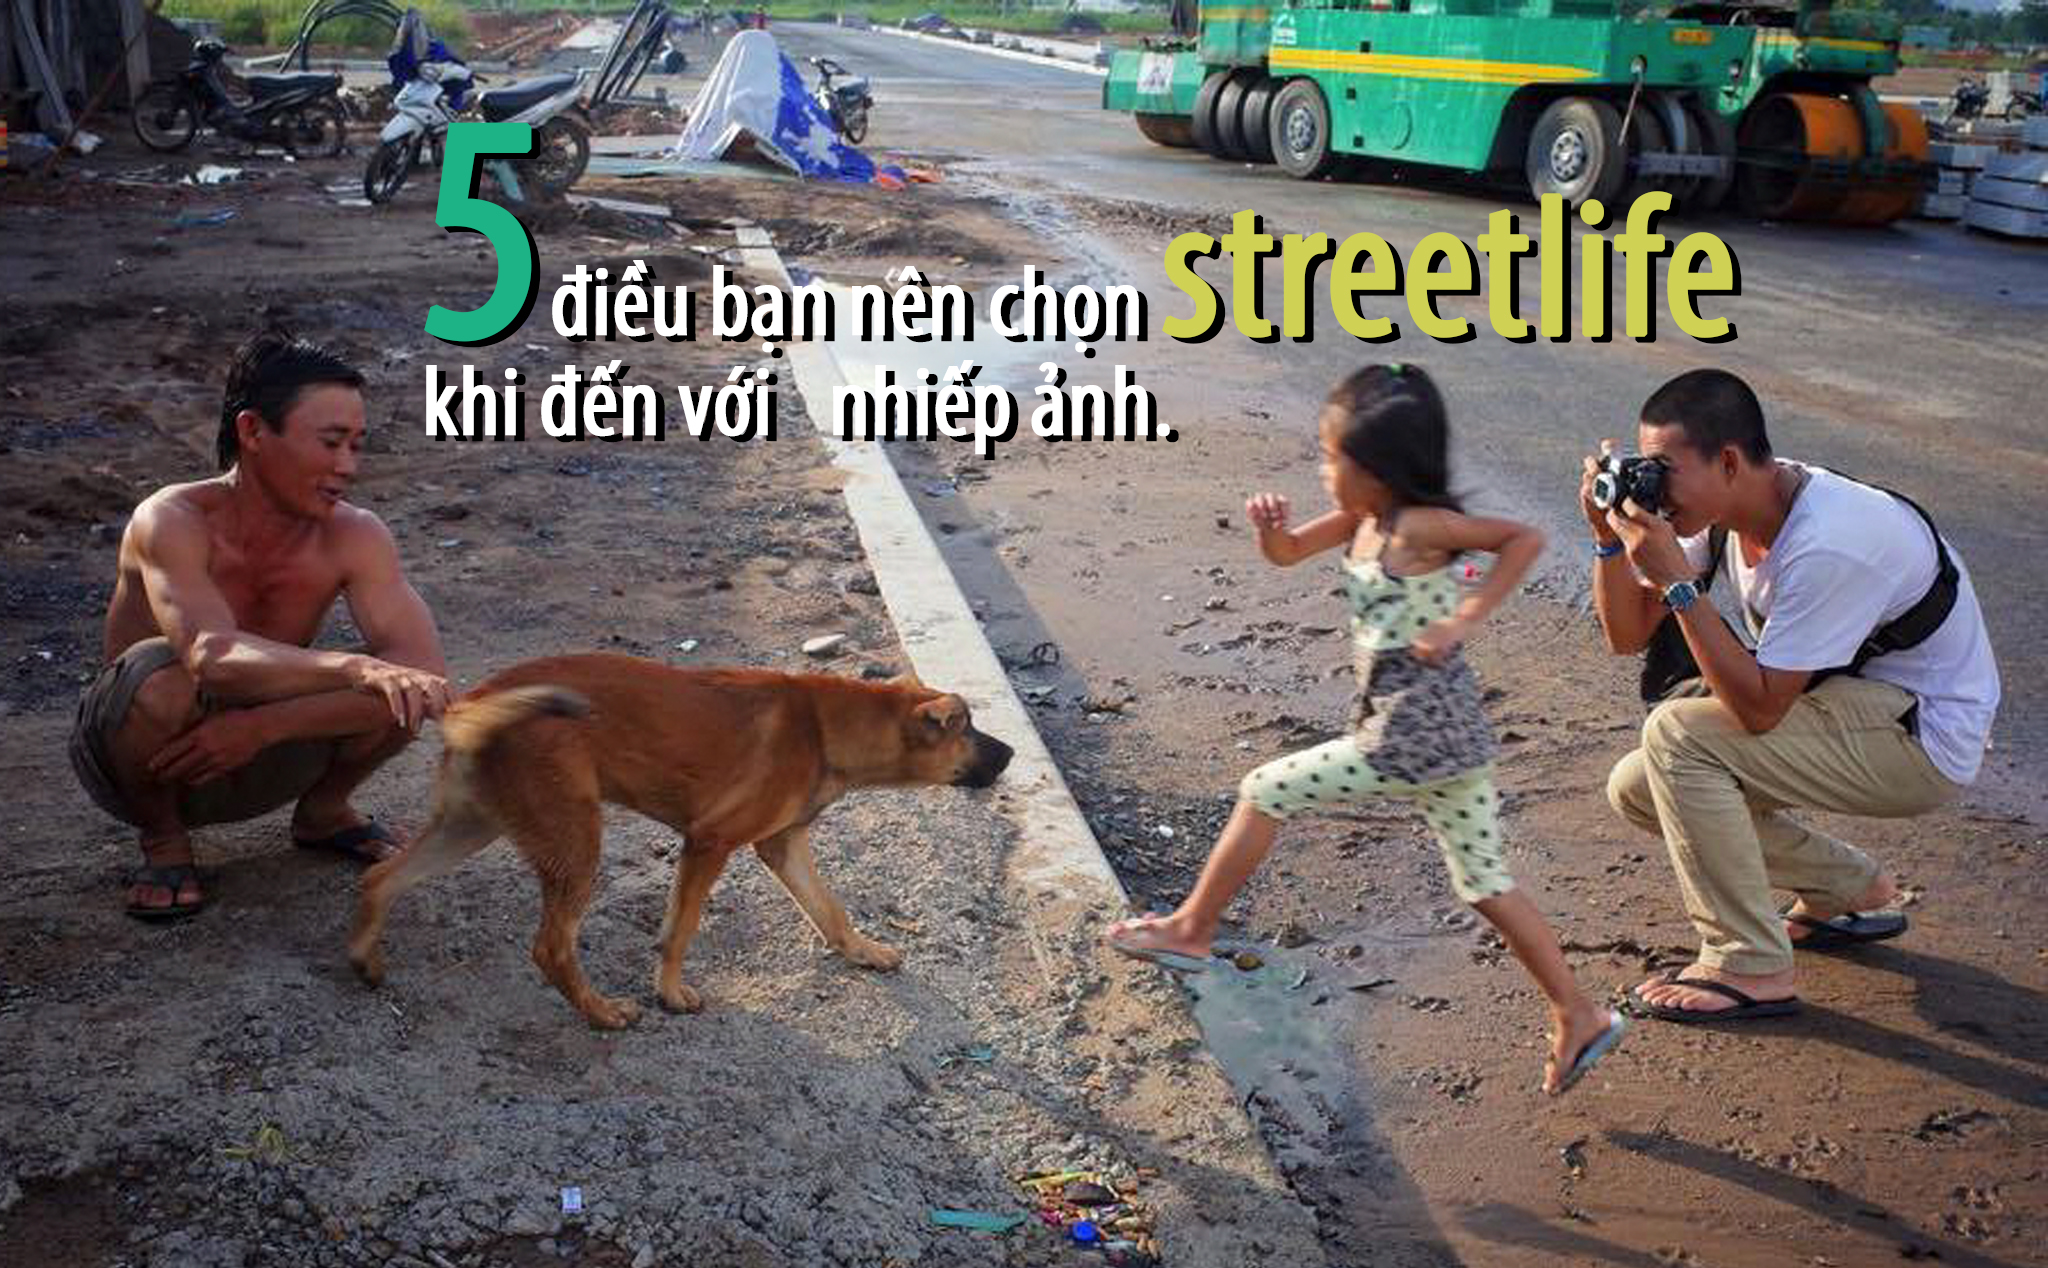 5 điều bạn nên chọn streetlife khi đến với nhiếp ảnh.